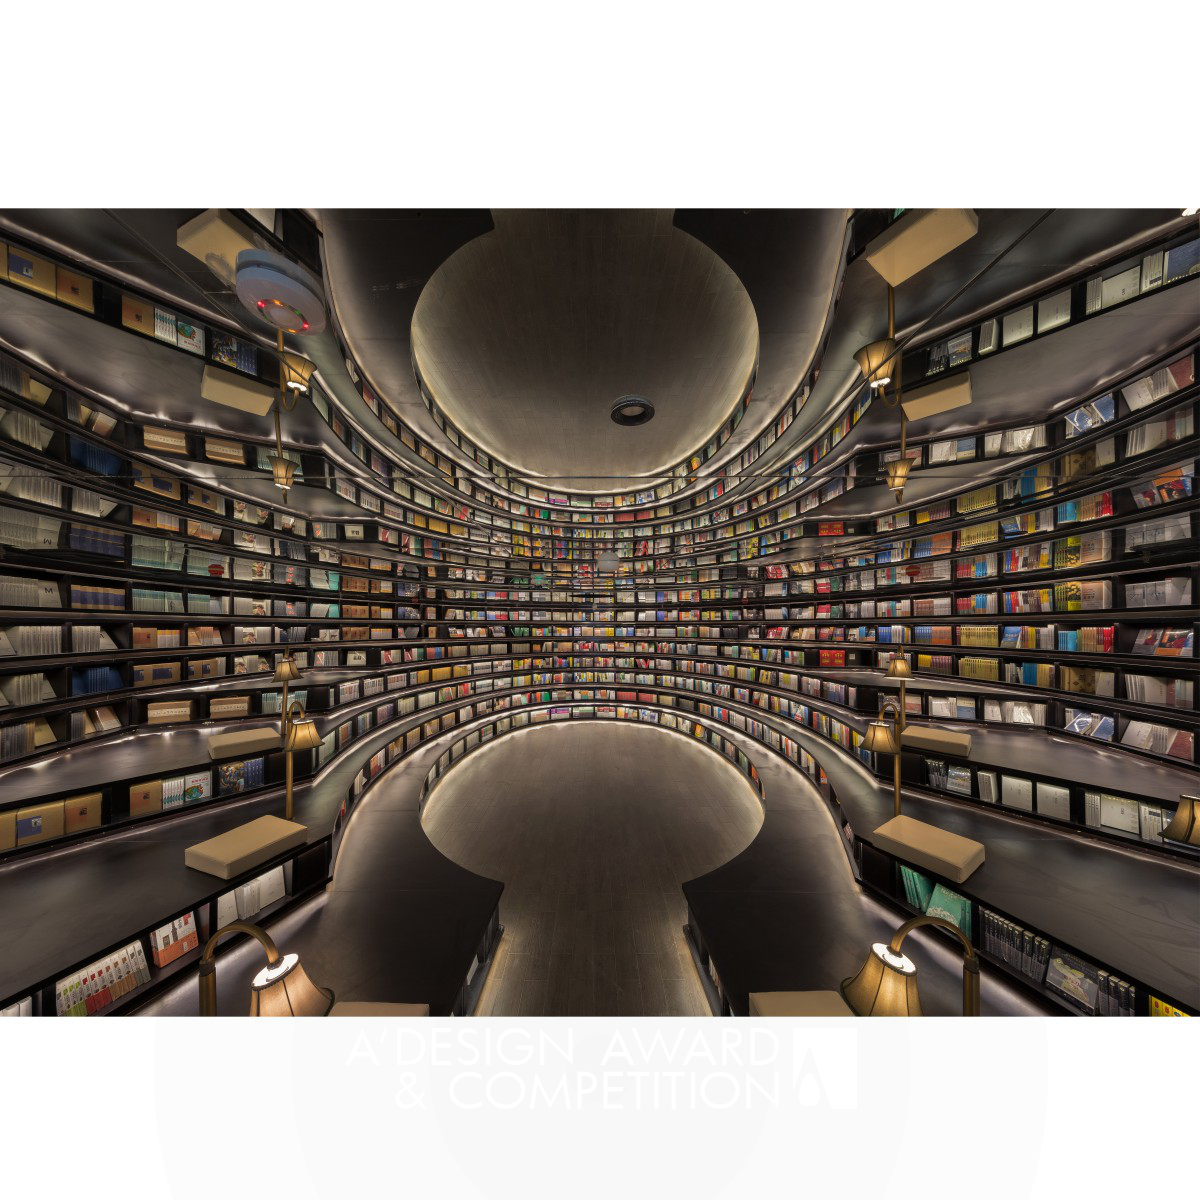 Hangzhou Zhongshuge Bookstore by Wenqiang Han